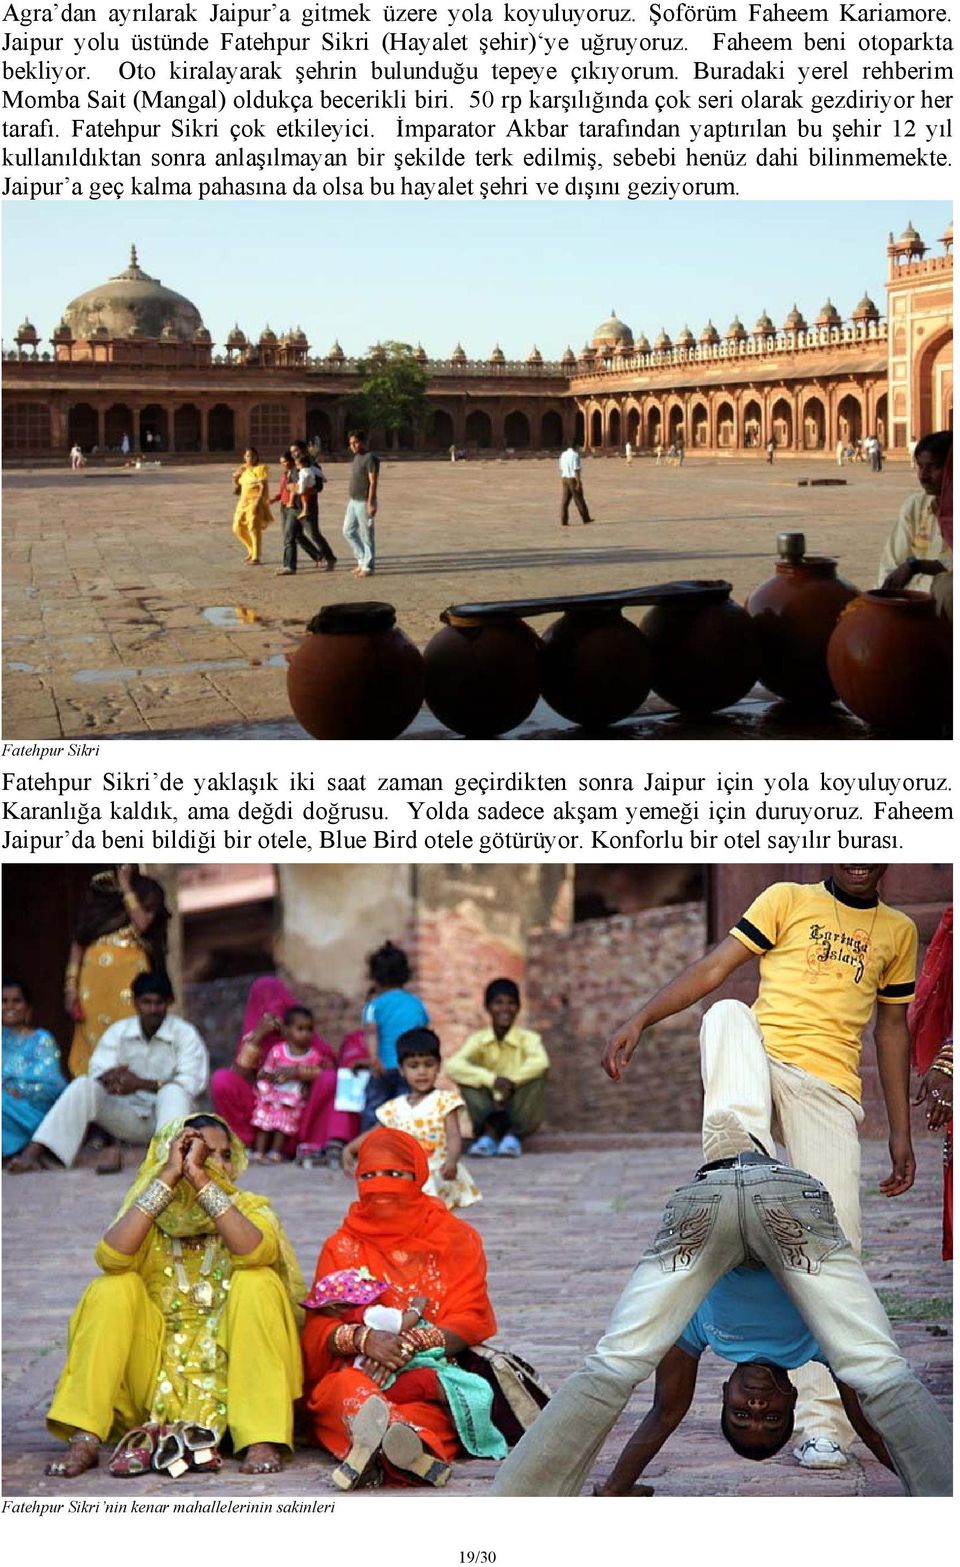 Fatehpur Sikri çok etkileyici. İmparator Akbar tarafından yaptırılan bu şehir 12 yıl kullanıldıktan sonra anlaşılmayan bir şekilde terk edilmiş, sebebi henüz dahi bilinmemekte.